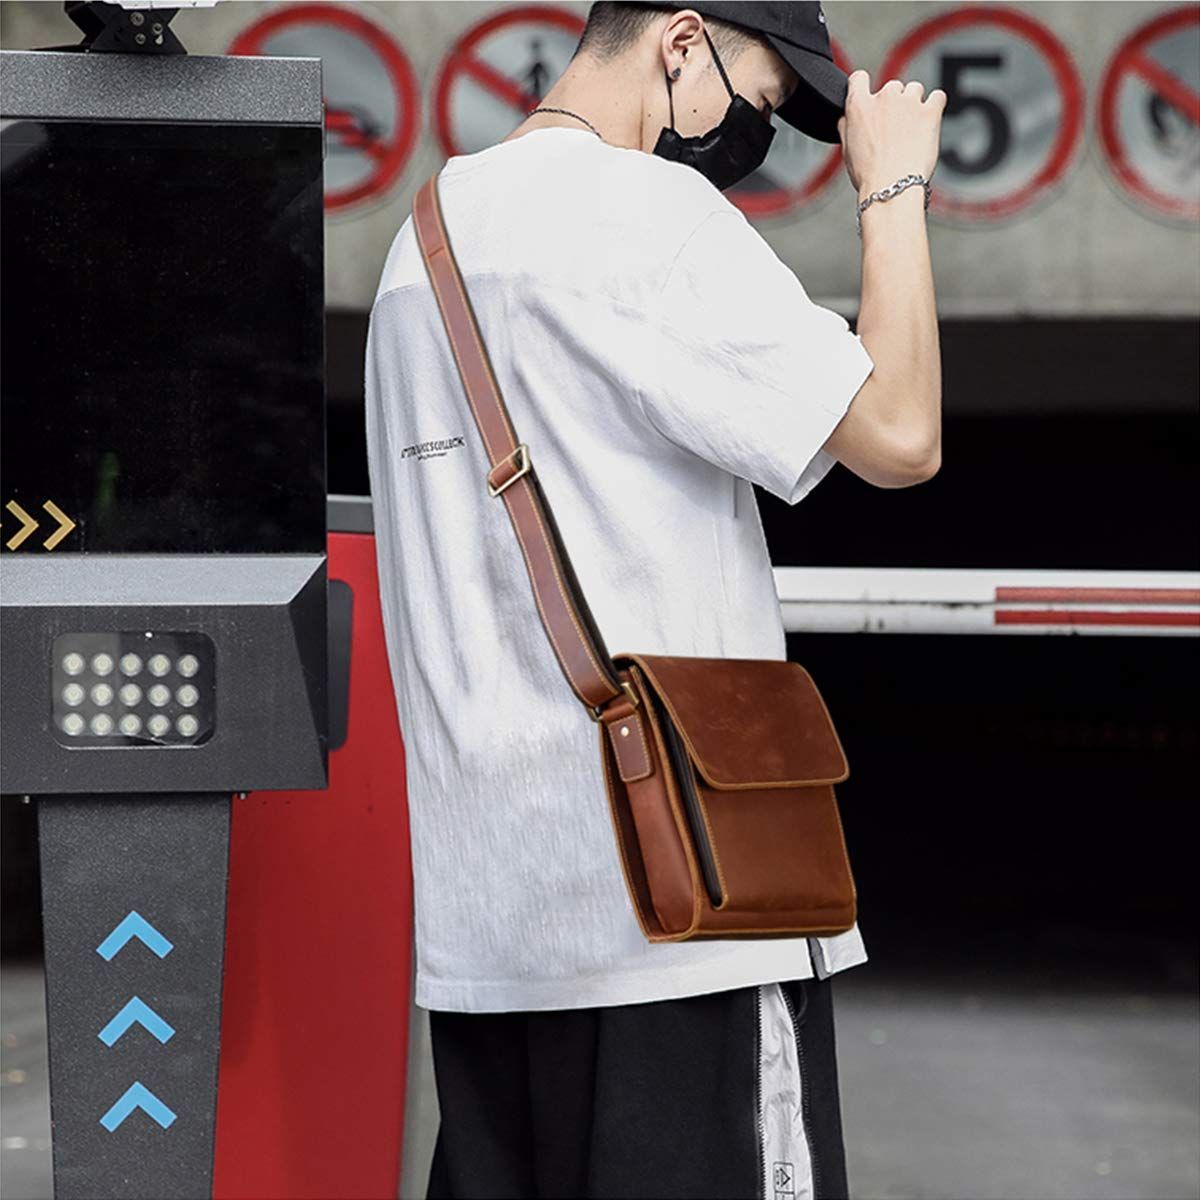 【数量限定】[Luufan] ショルダーバッグ 本革 メンズ 斜め掛けバッグ レザー メッセンジャーバッグ 通勤 通学 フラップ 肩掛け鞄  9.7インチiPad対応